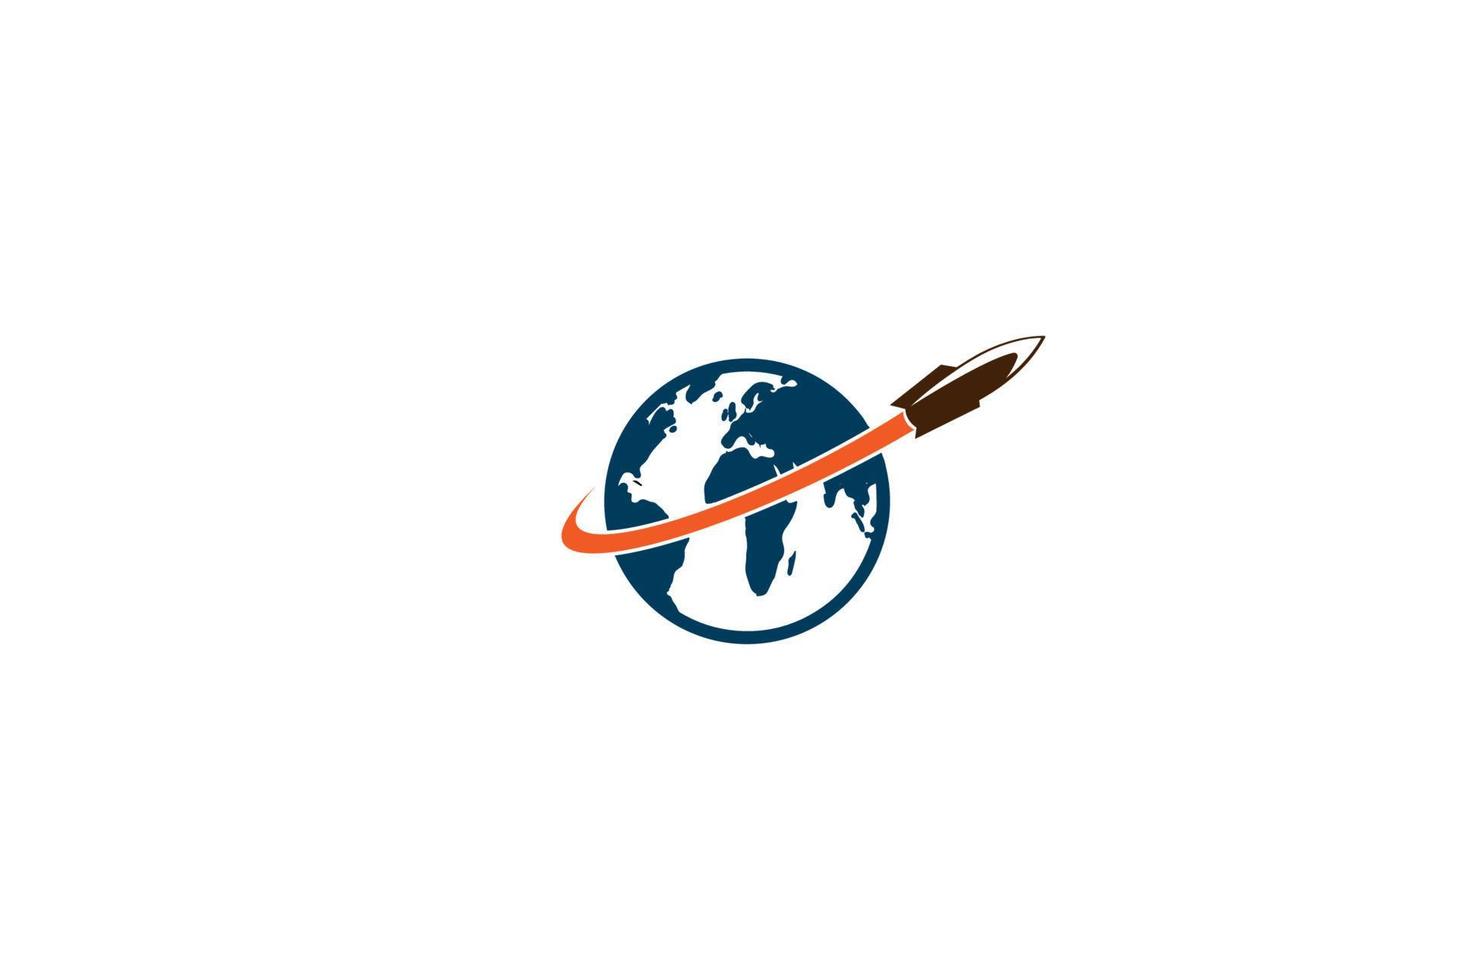 wereldbol met raket voor wetenschappelijke expeditie logo ontwerp vector